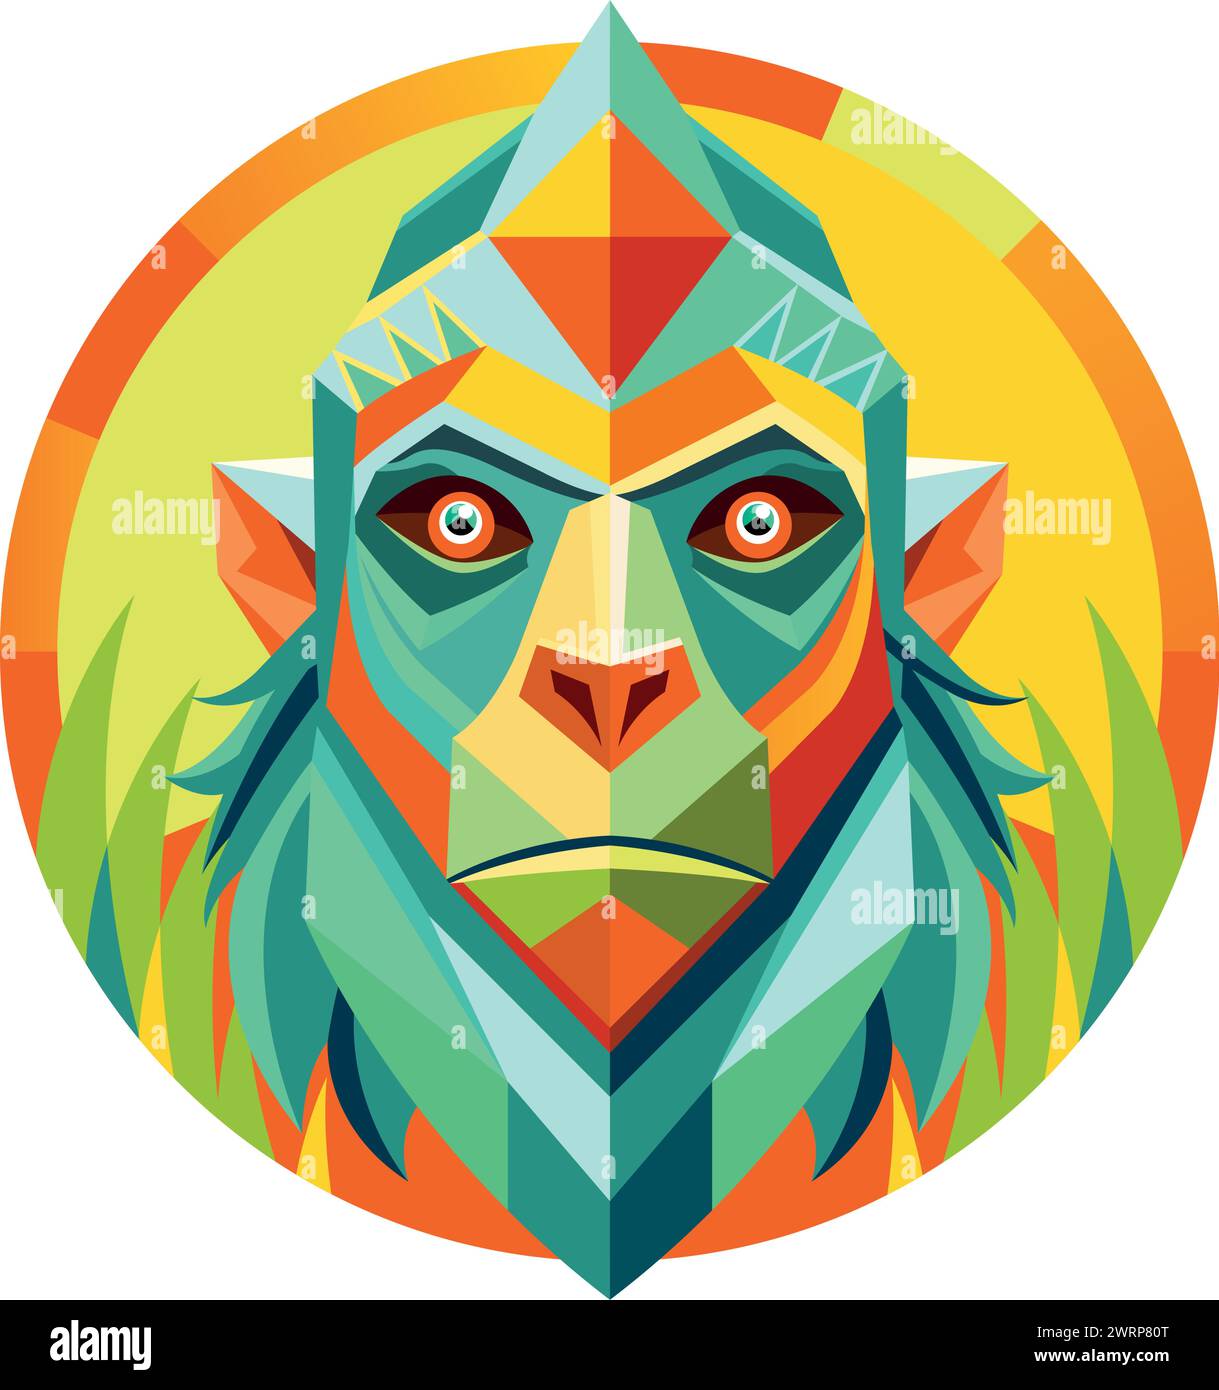 Vue de face du masque africain en forme de tête de gorille dans un style géométrique avec des couleurs chaudes. Image vectorielle Illustration de Vecteur